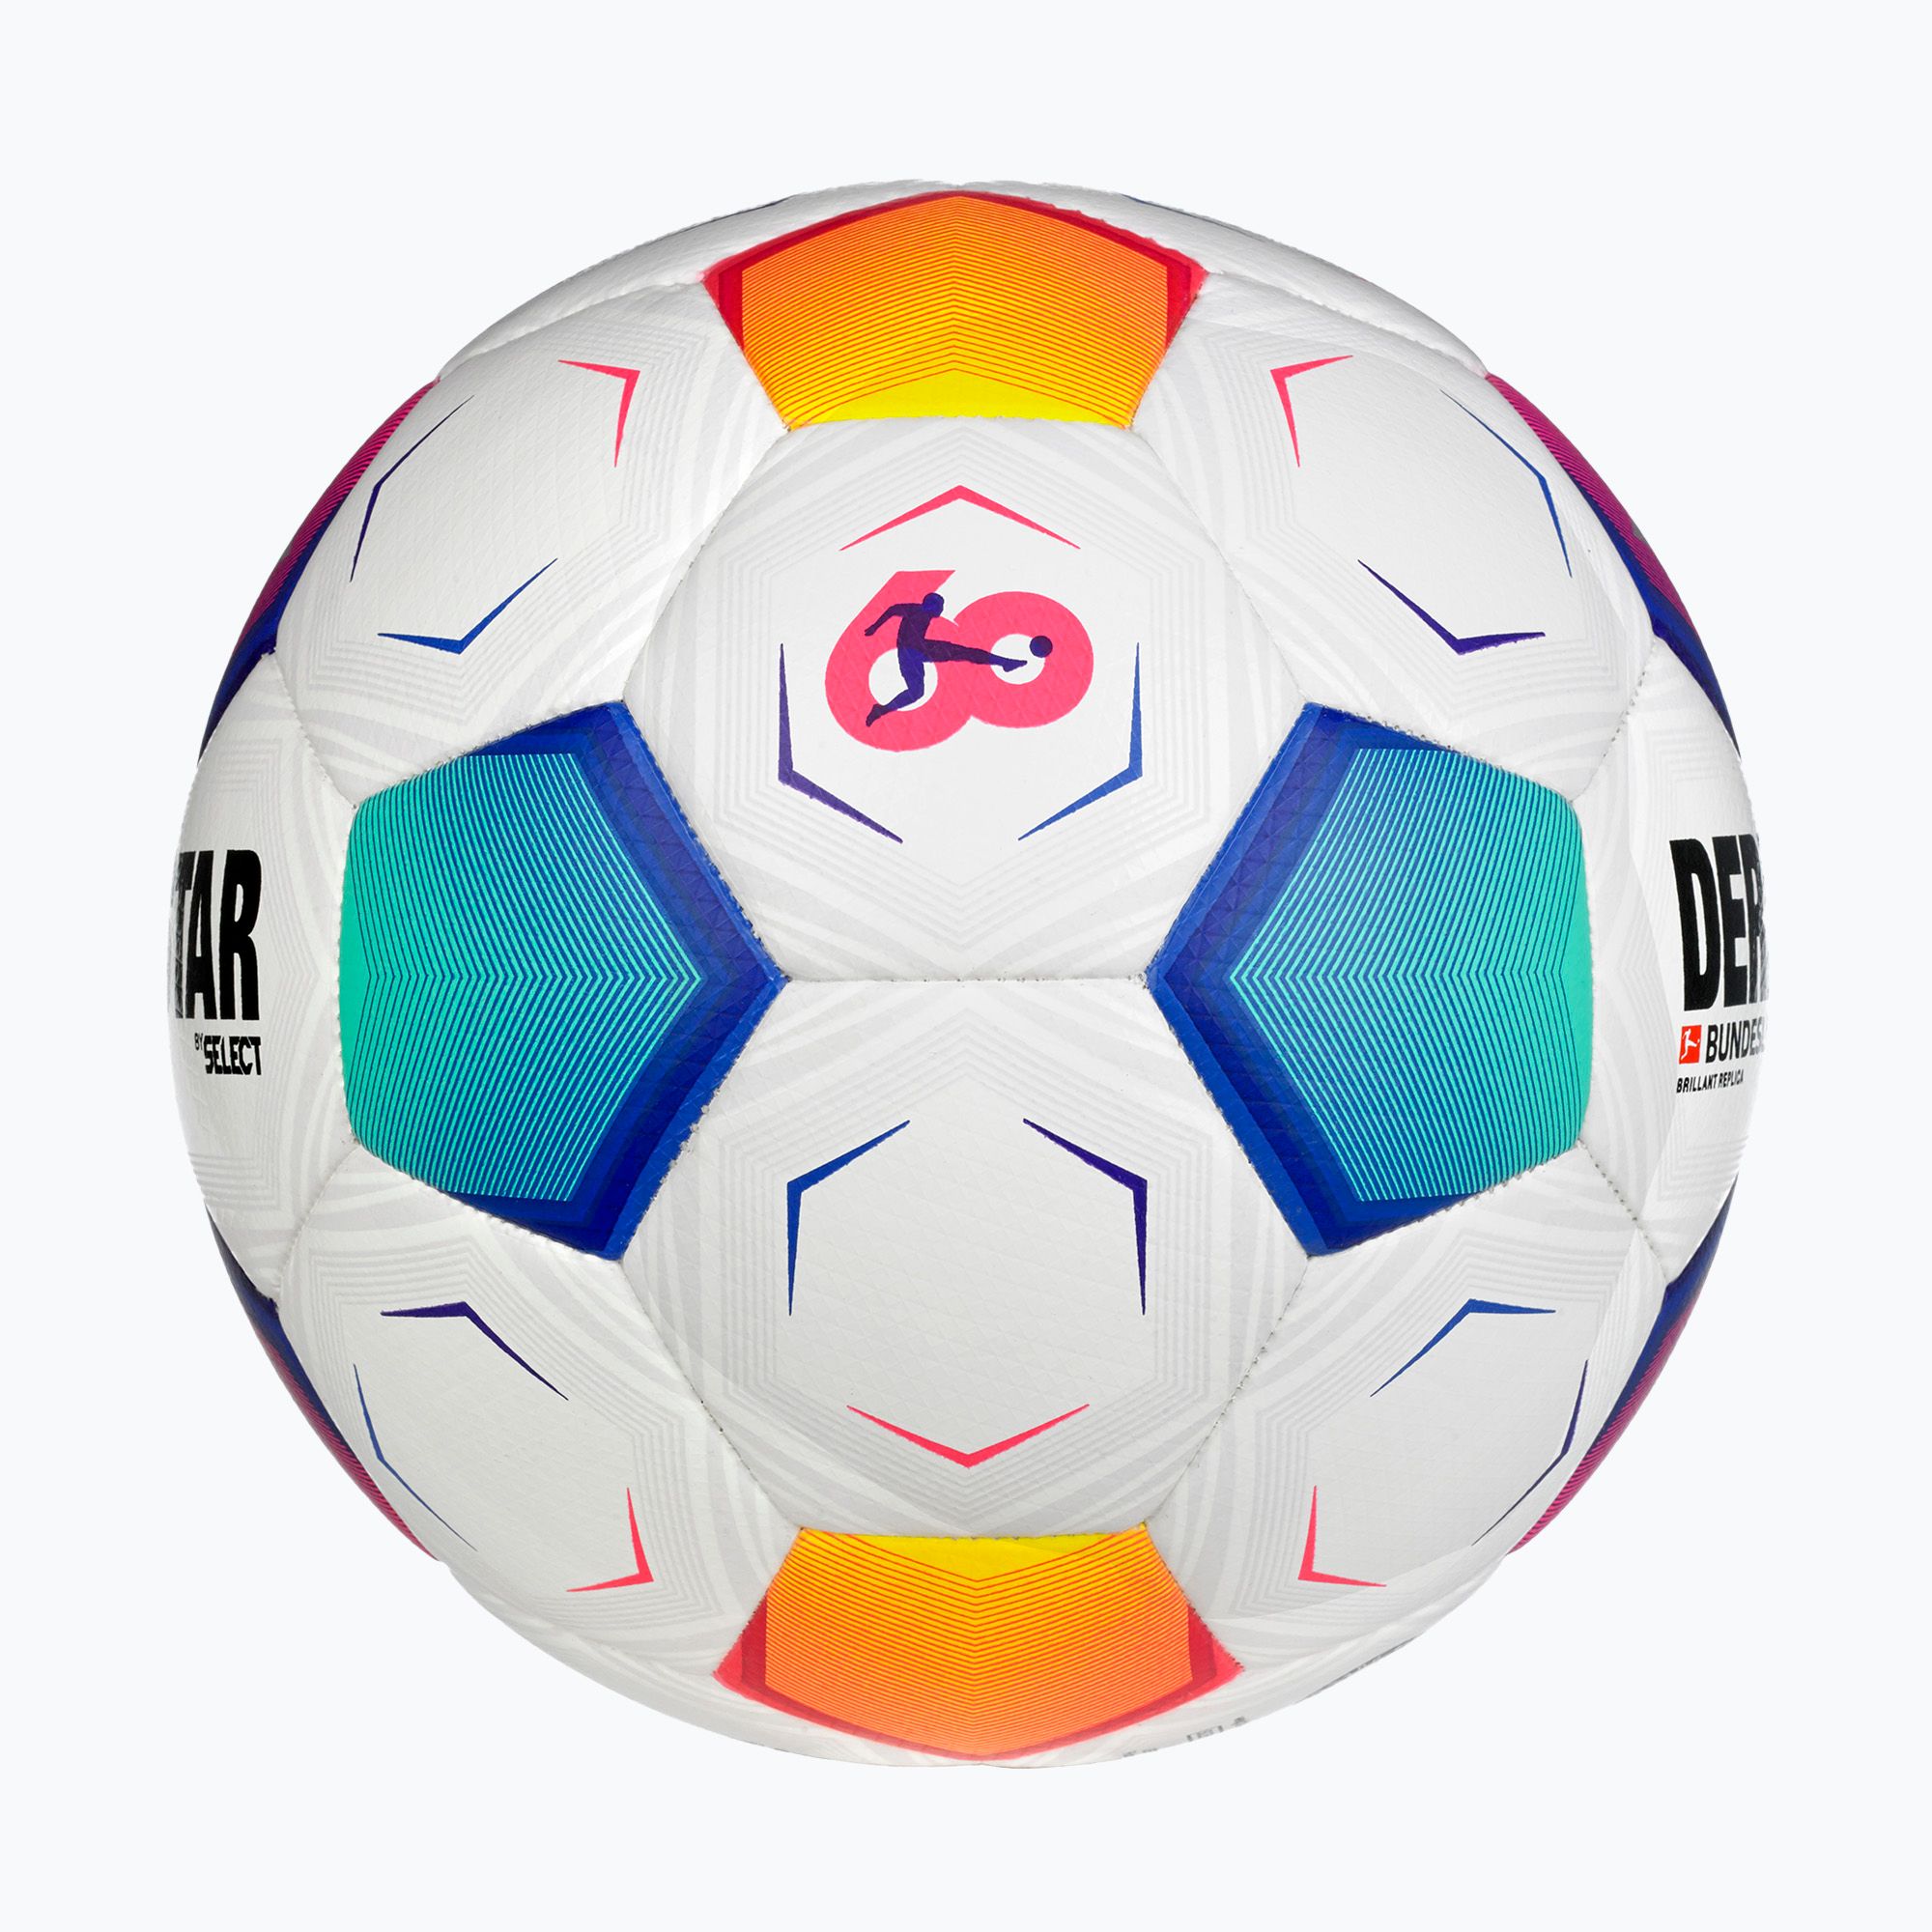 Piłka do piłki nożnej DERBYSTAR Bundesliga Brillant Replica v23 multicolor rozmiar 4 zdjęcie nr 2